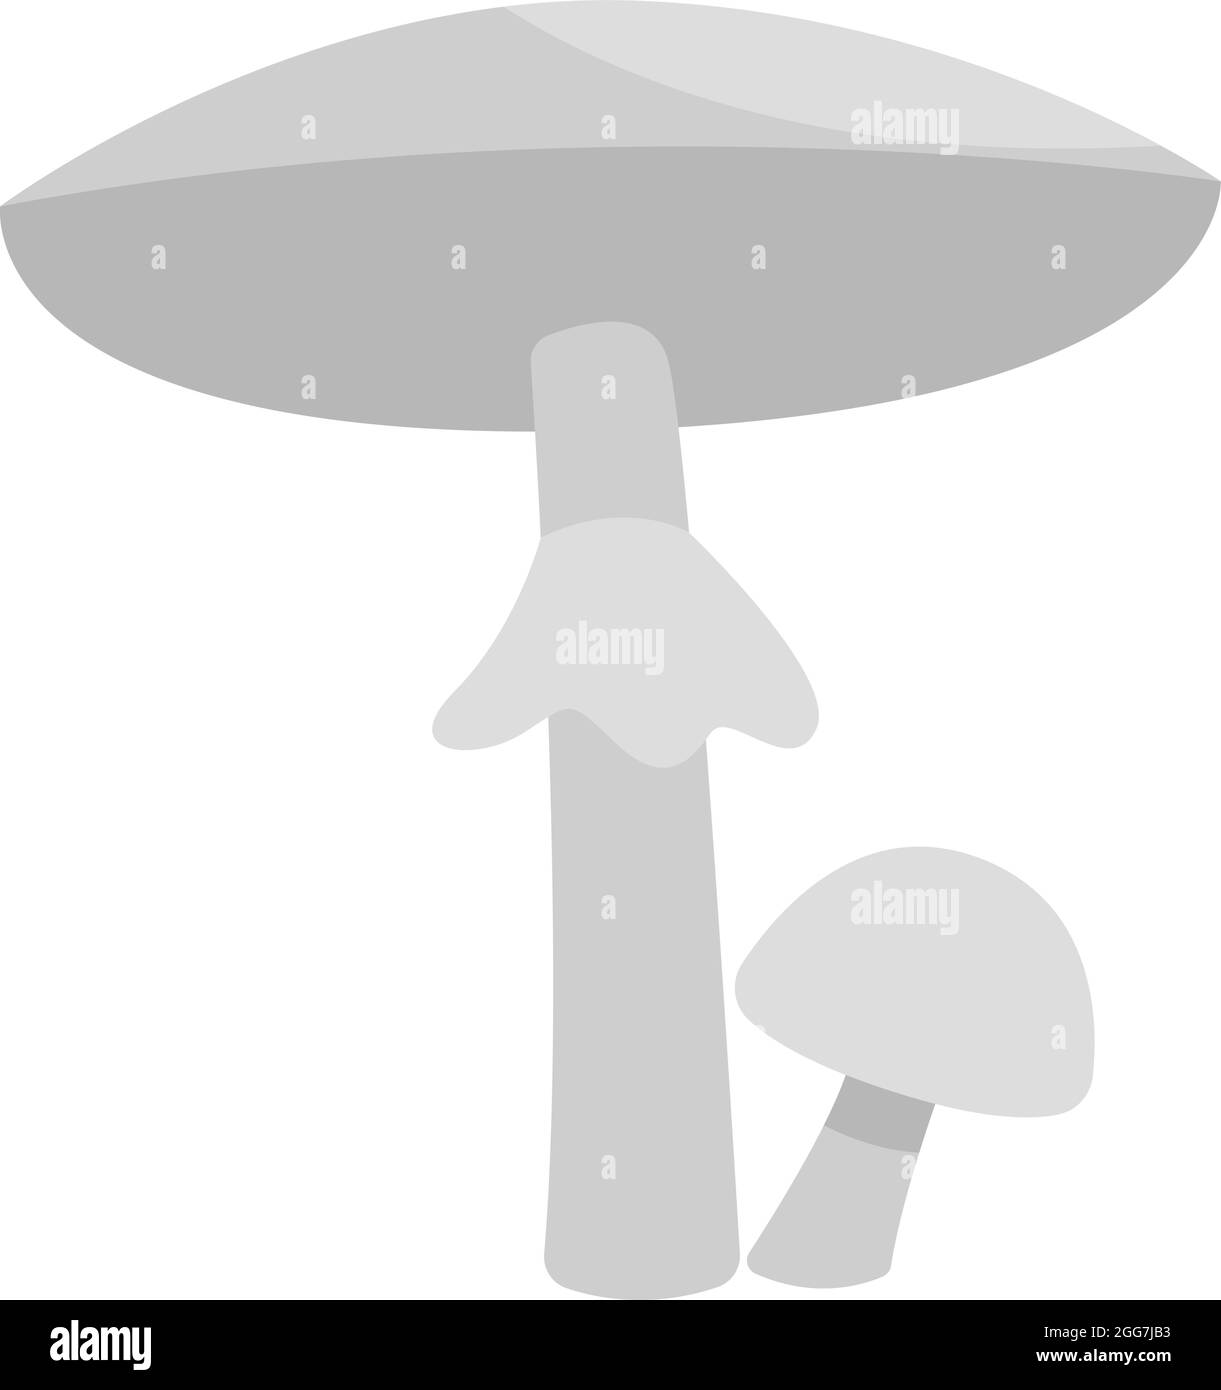 White destroying angel mushroom , icon illustration, vector on white background Stock Vector